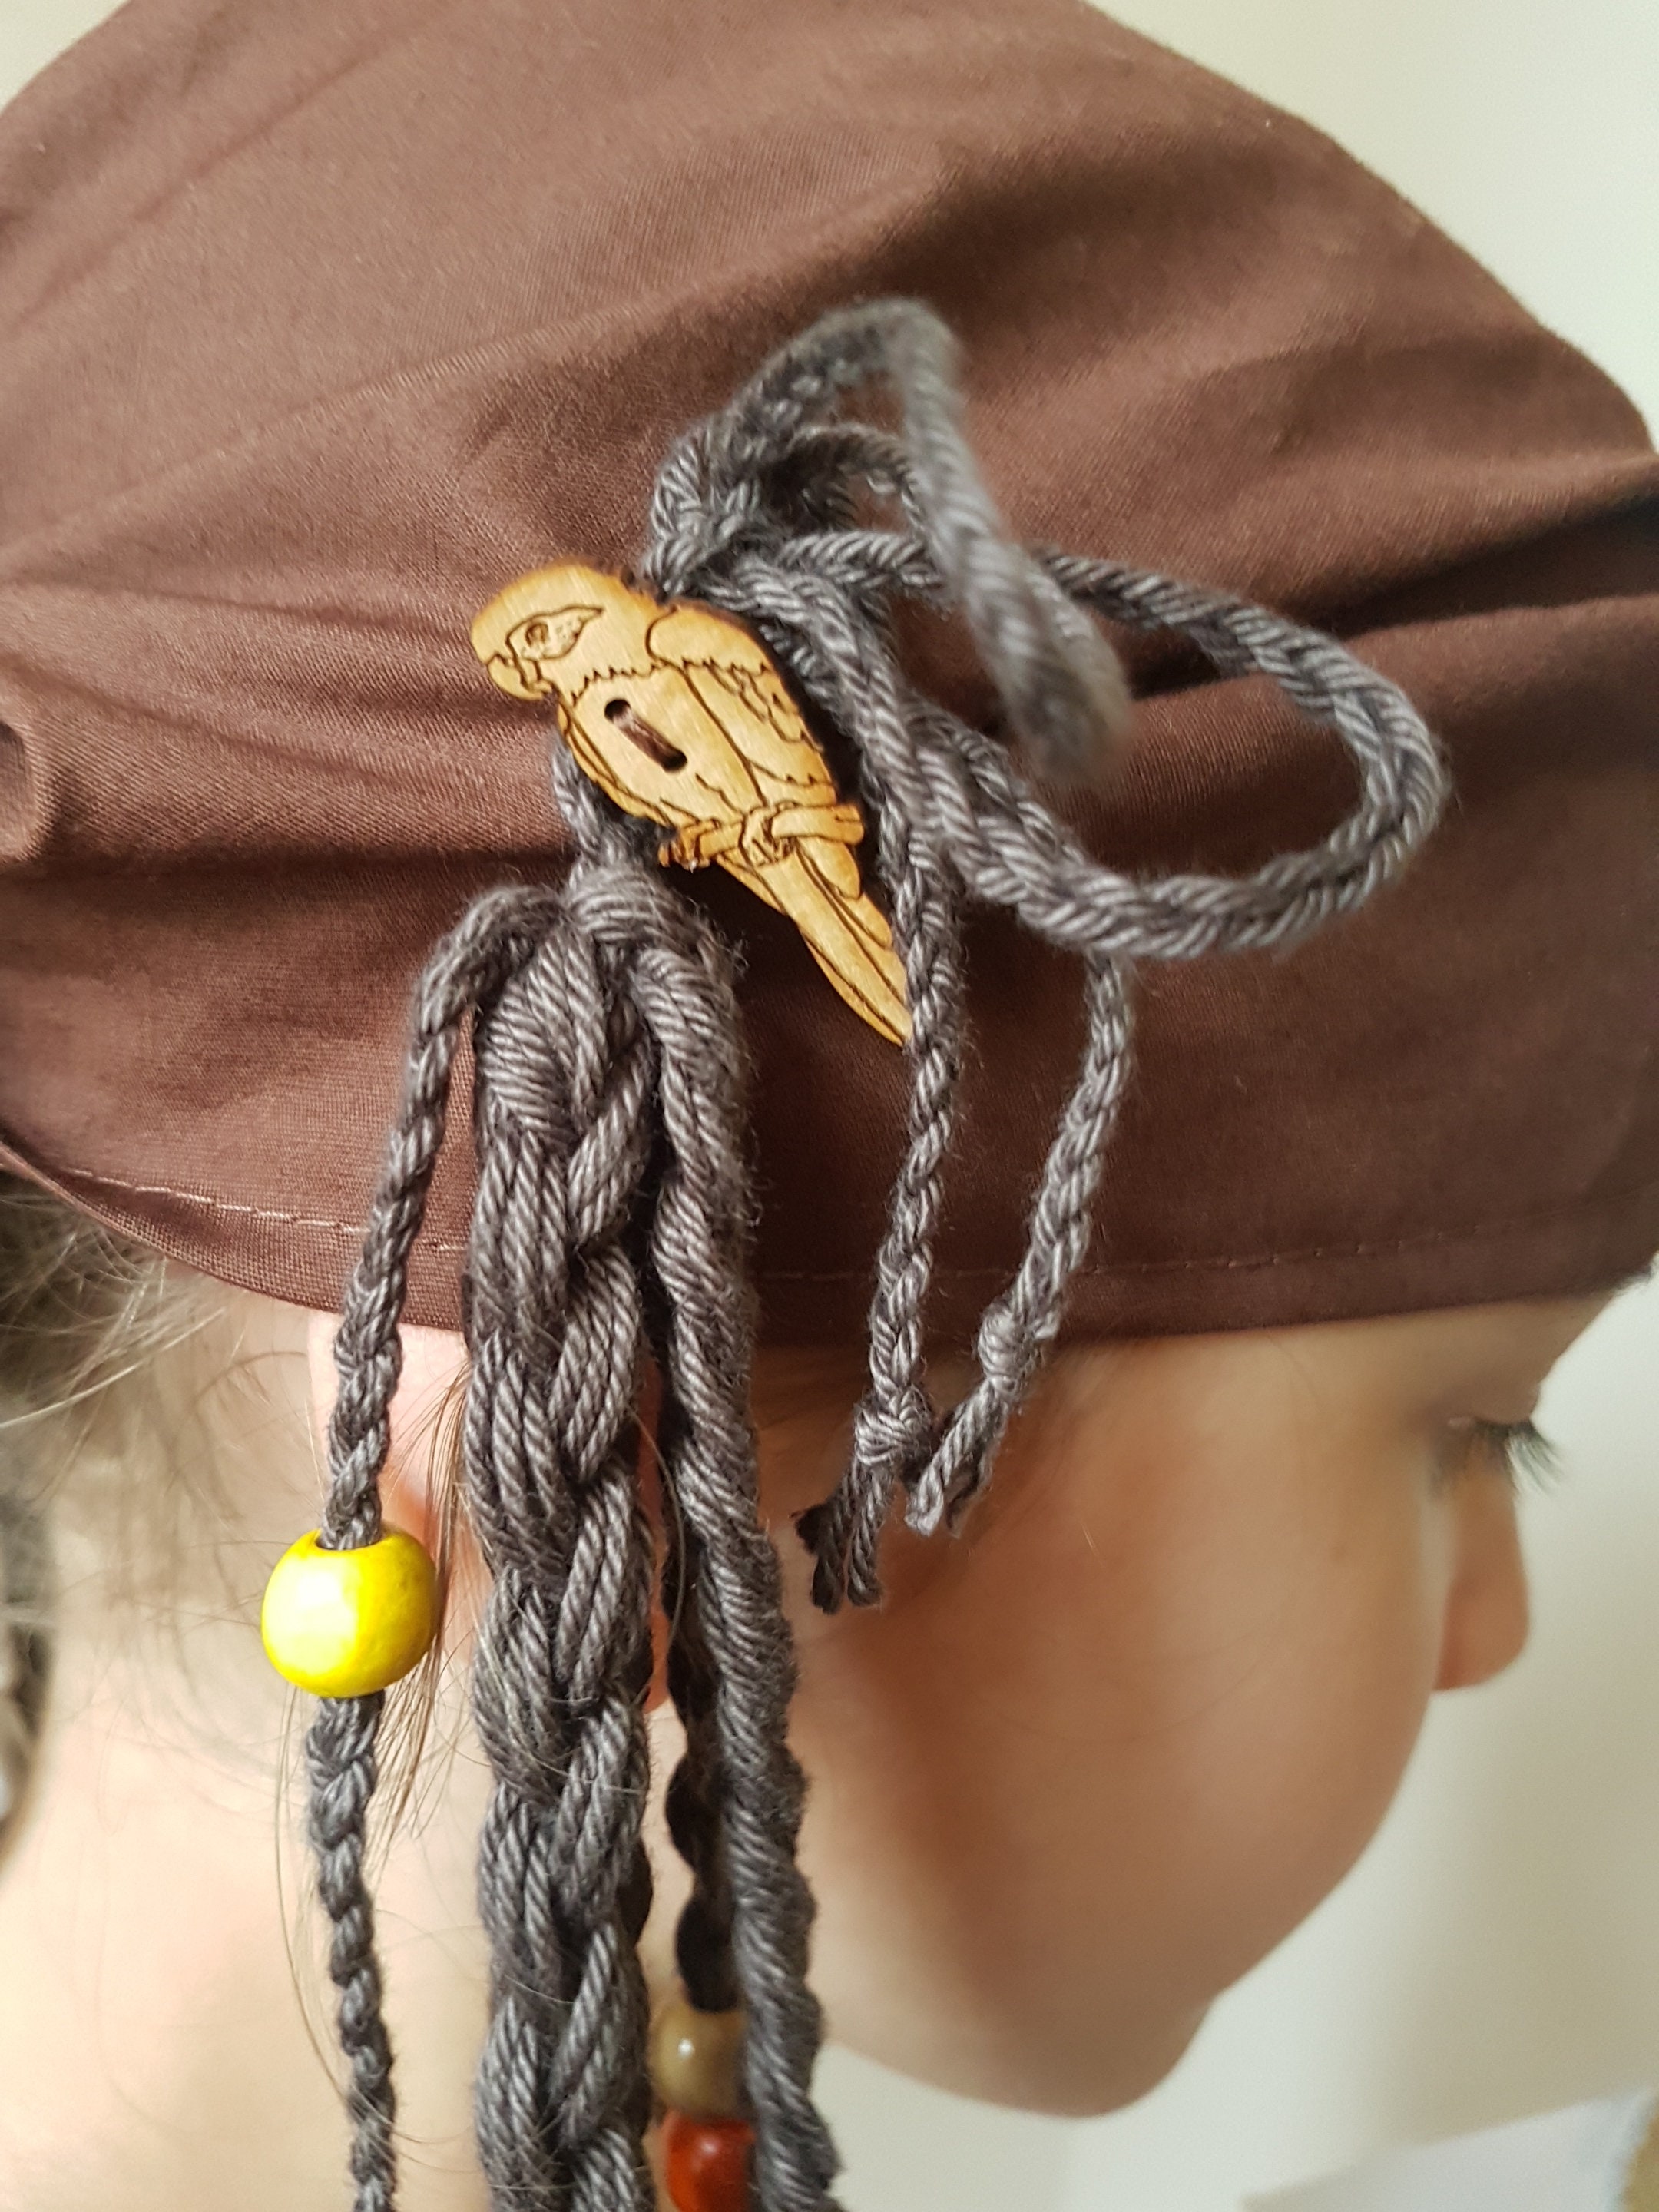 Bandana de pirate pour enfants avec accessoire de cheveux pour s'habiller.  Pirates des Caraïbes. 100 % coton avec perles et boutons. Couleur rose -   France